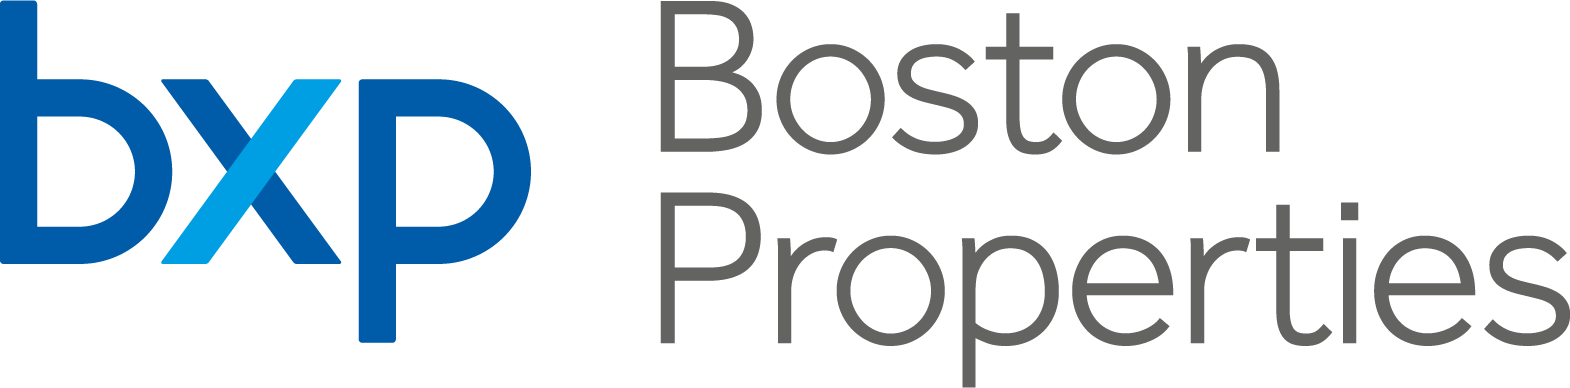 Boston Properties Logo png